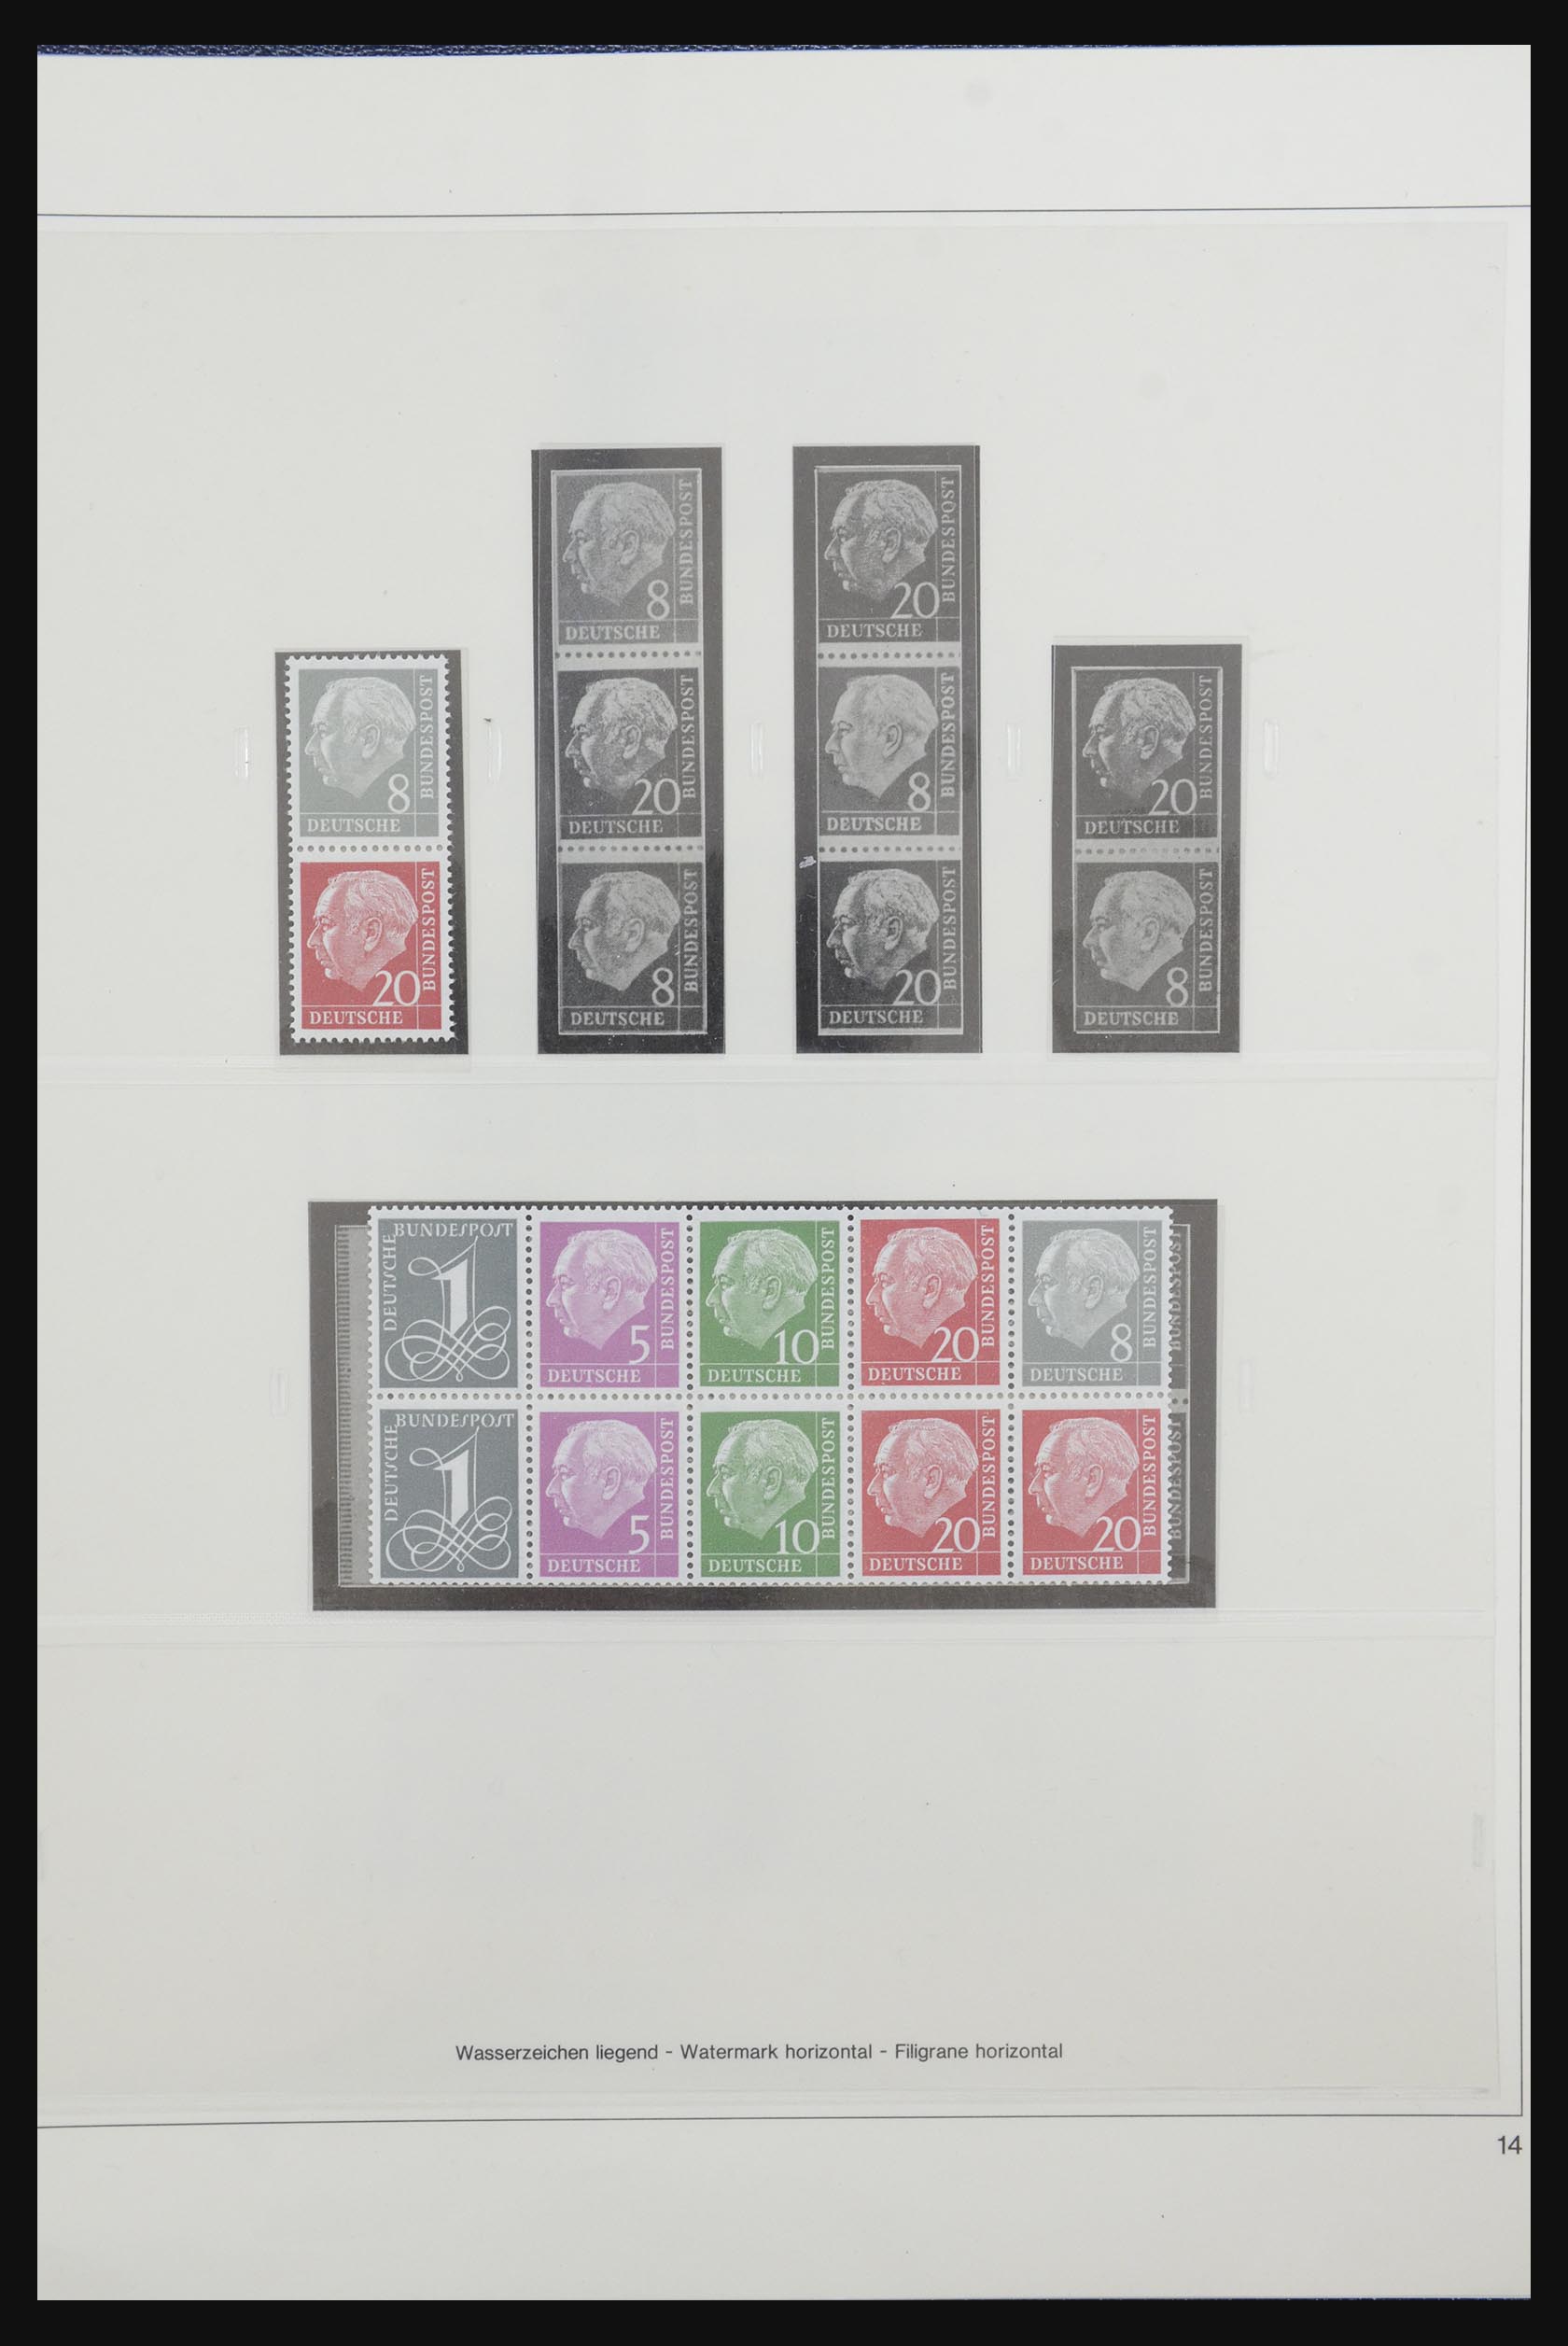 31842 017 - 31842 Bundespost combinaties 1951-2003.